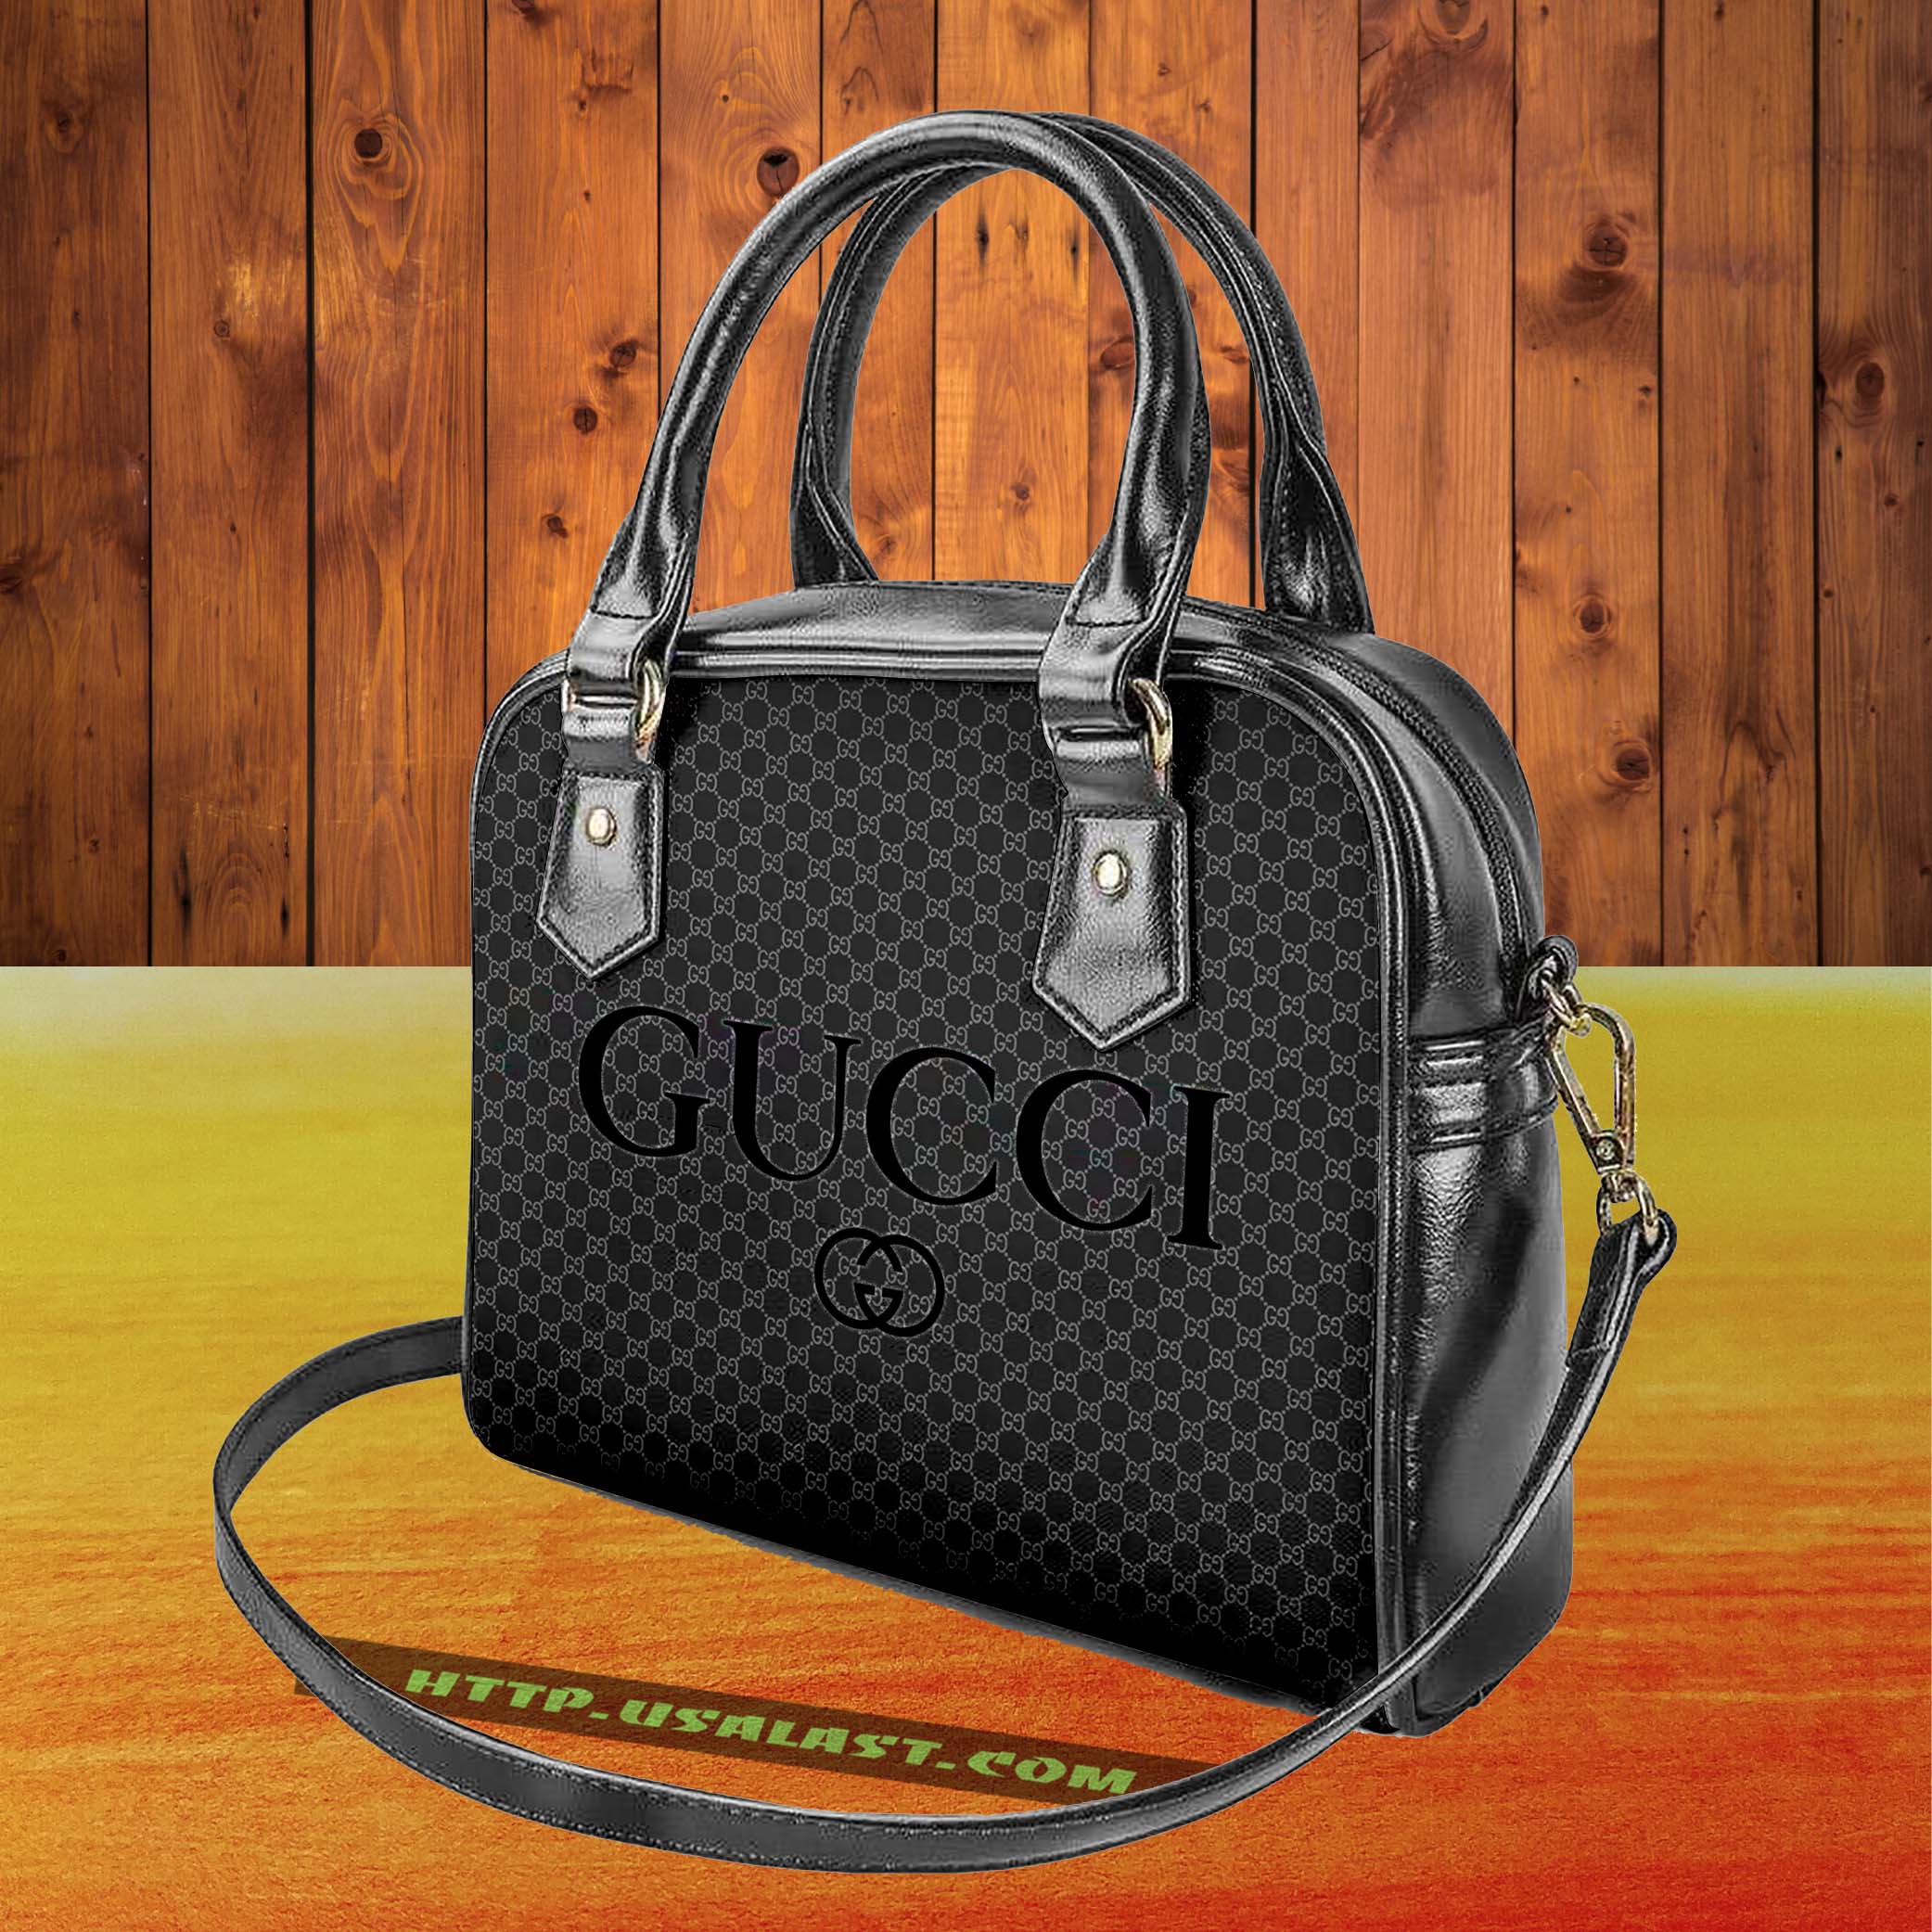 JCIzU8xG-T080322-020xxxGucci-Logo-Luxury-Brand-Shoulder-Handbag-V8.jpg